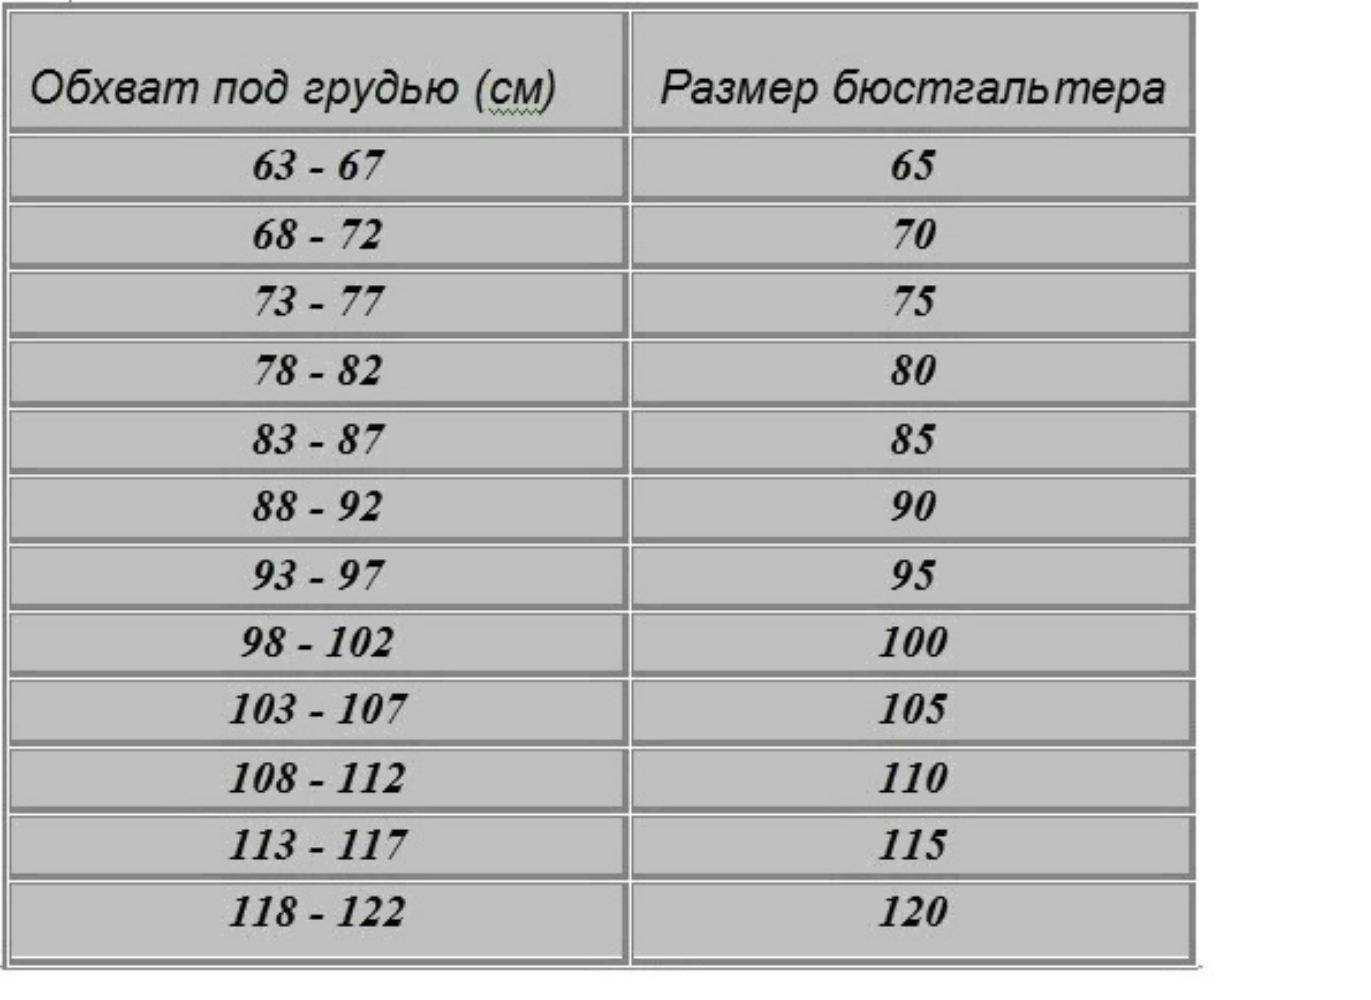 Как определить размер бюстгальтера используя таблицу